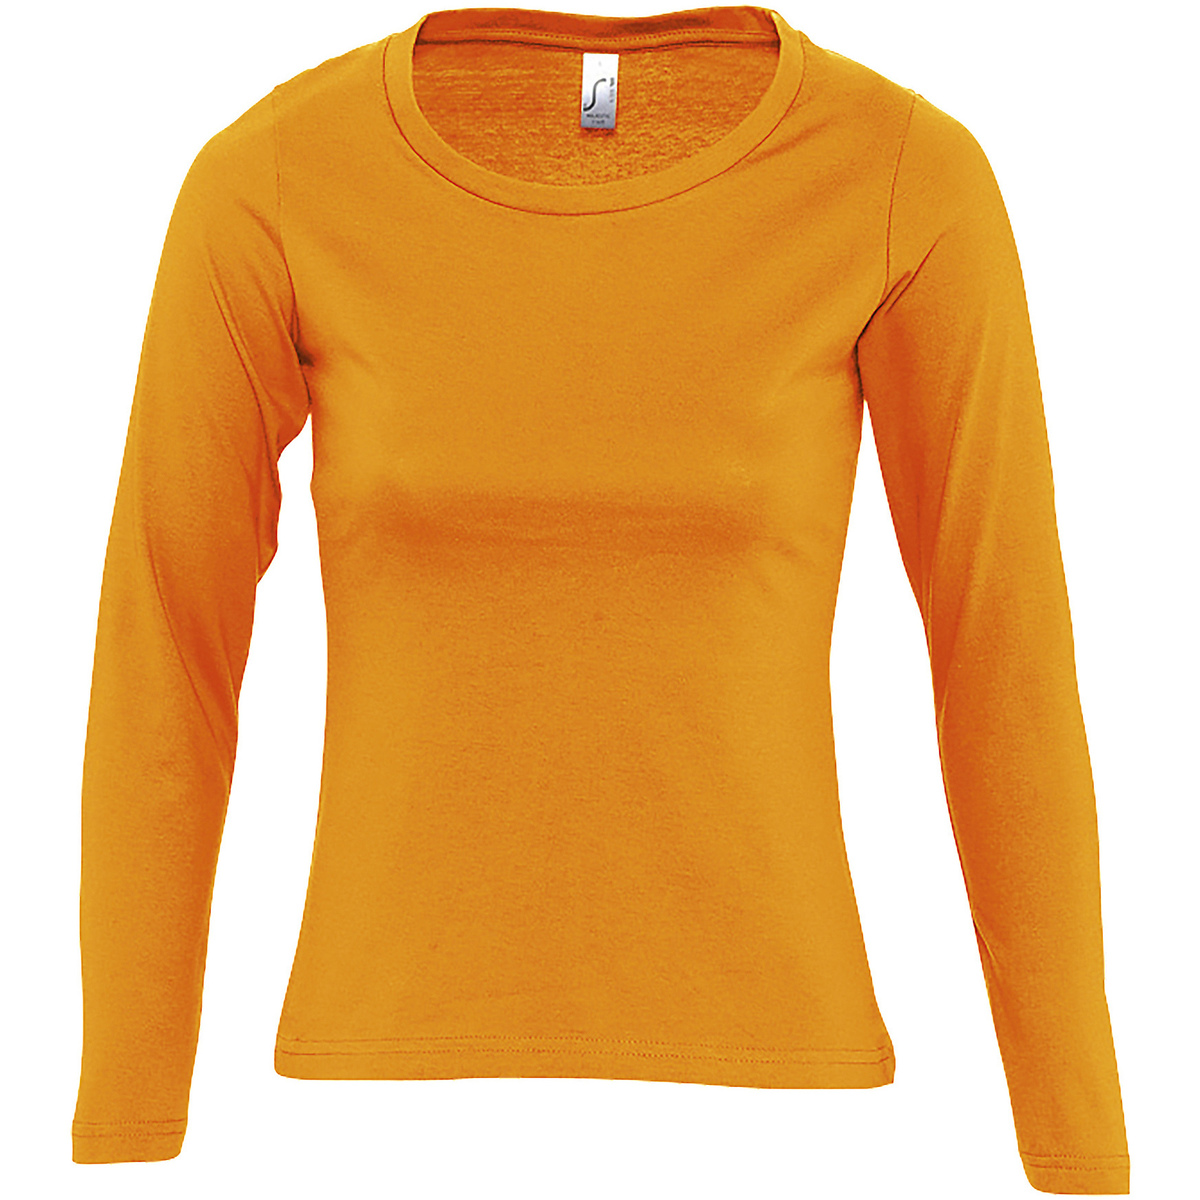 Oblačila Ženske Majice z dolgimi rokavi Sols MAJESTIC COLORS GIRL Oranžna